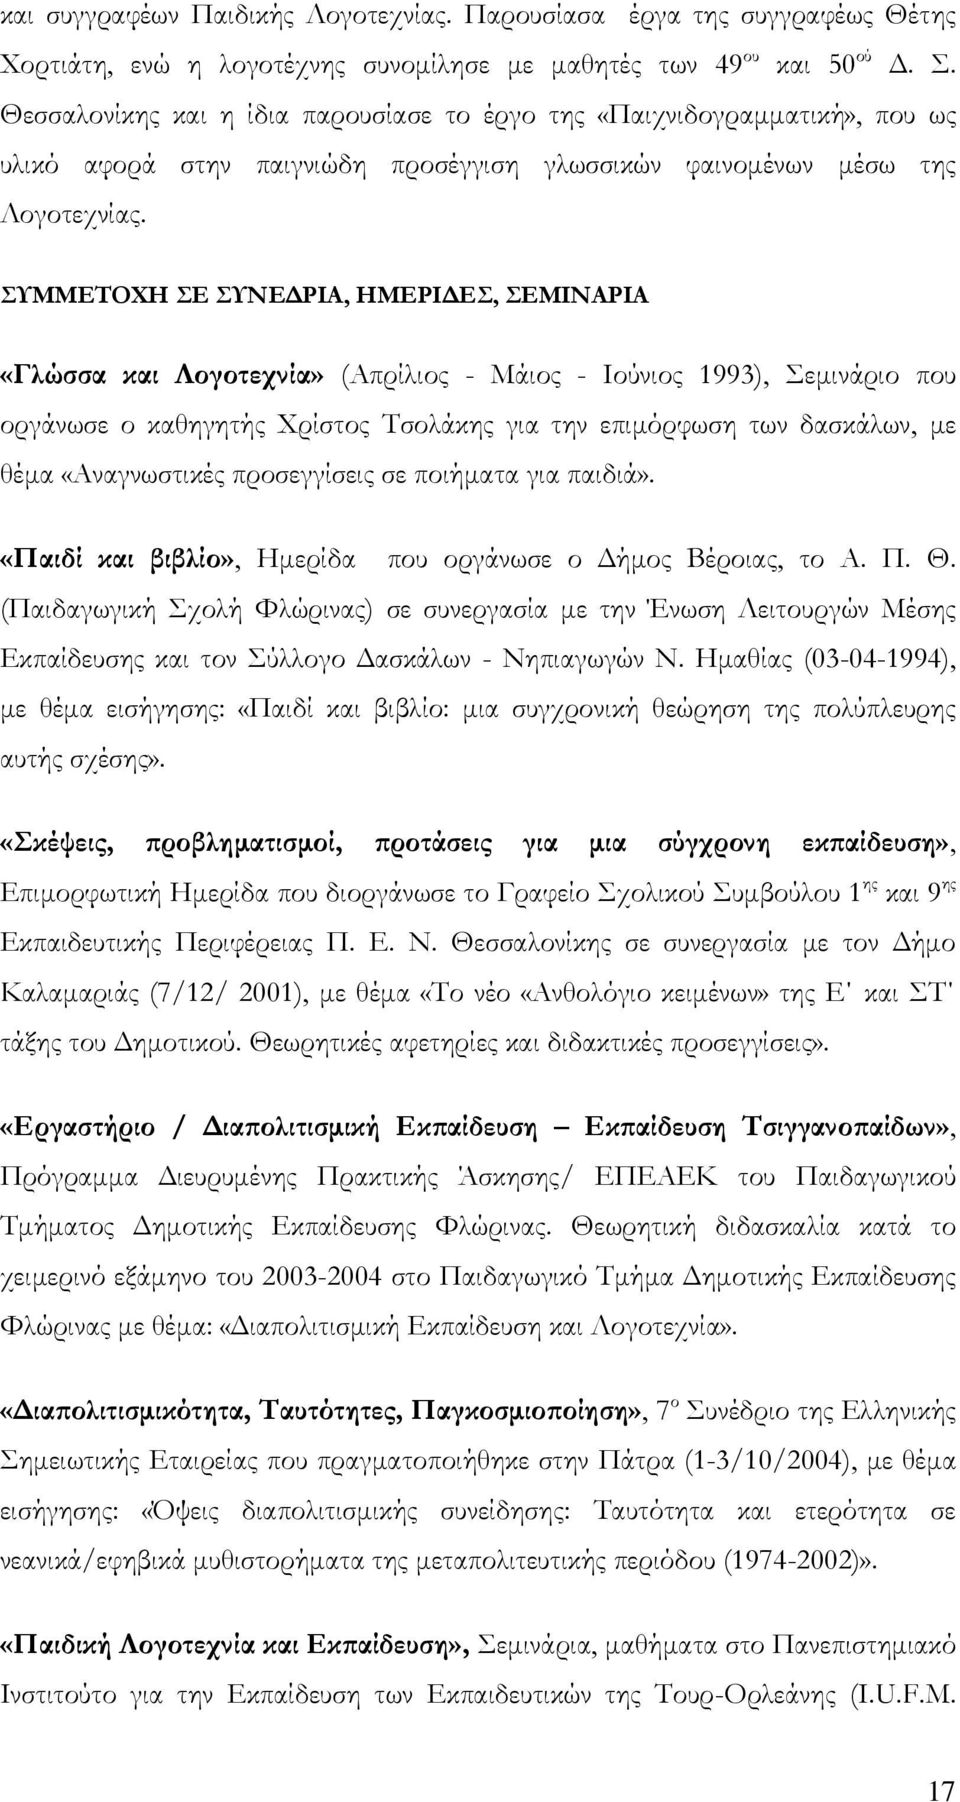 ΤΜΜΕΣΟΦΗ Ε ΤΝΕΔΡΙΑ, ΗΜΕΡΙΔΕ, ΕΜΙΝΑΡΙΑ «Γλώσσα και Λογοτεχνία» (Απρίλιος - Μάιος - Ιούνιος 1993), εμινάριο που οργάνωσε ο καθηγητής Φρίστος Σσολάκης για την επιμόρφωση των δασκάλων, με θέμα